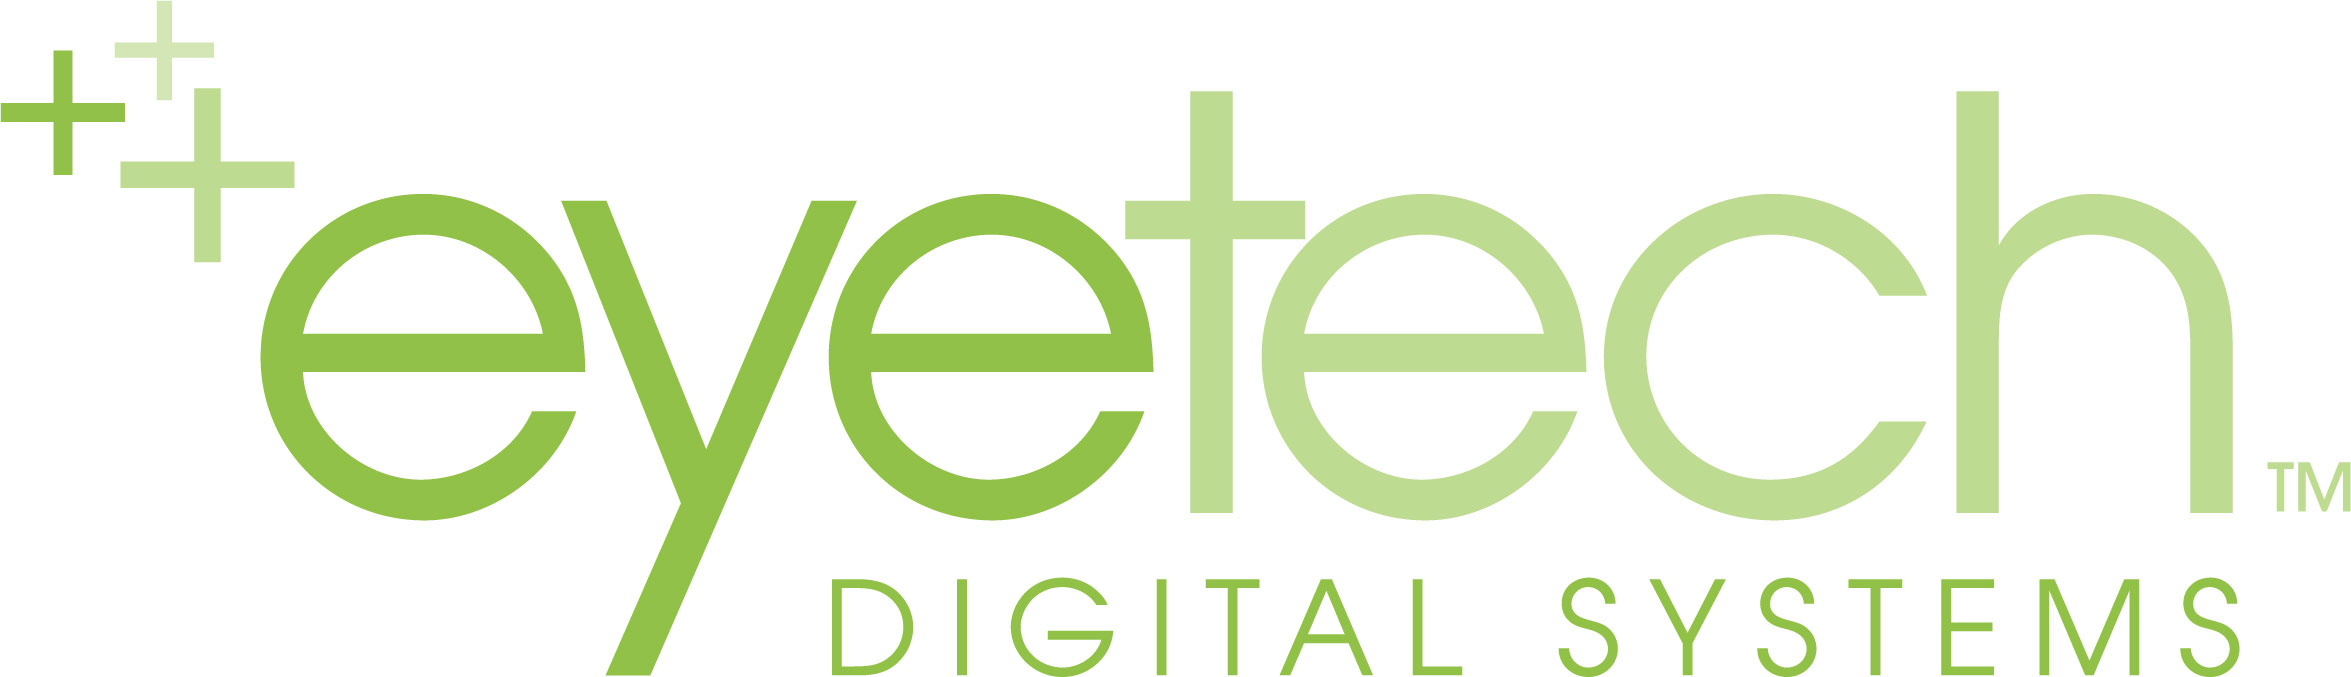 External link to EyeTech Digital Systems